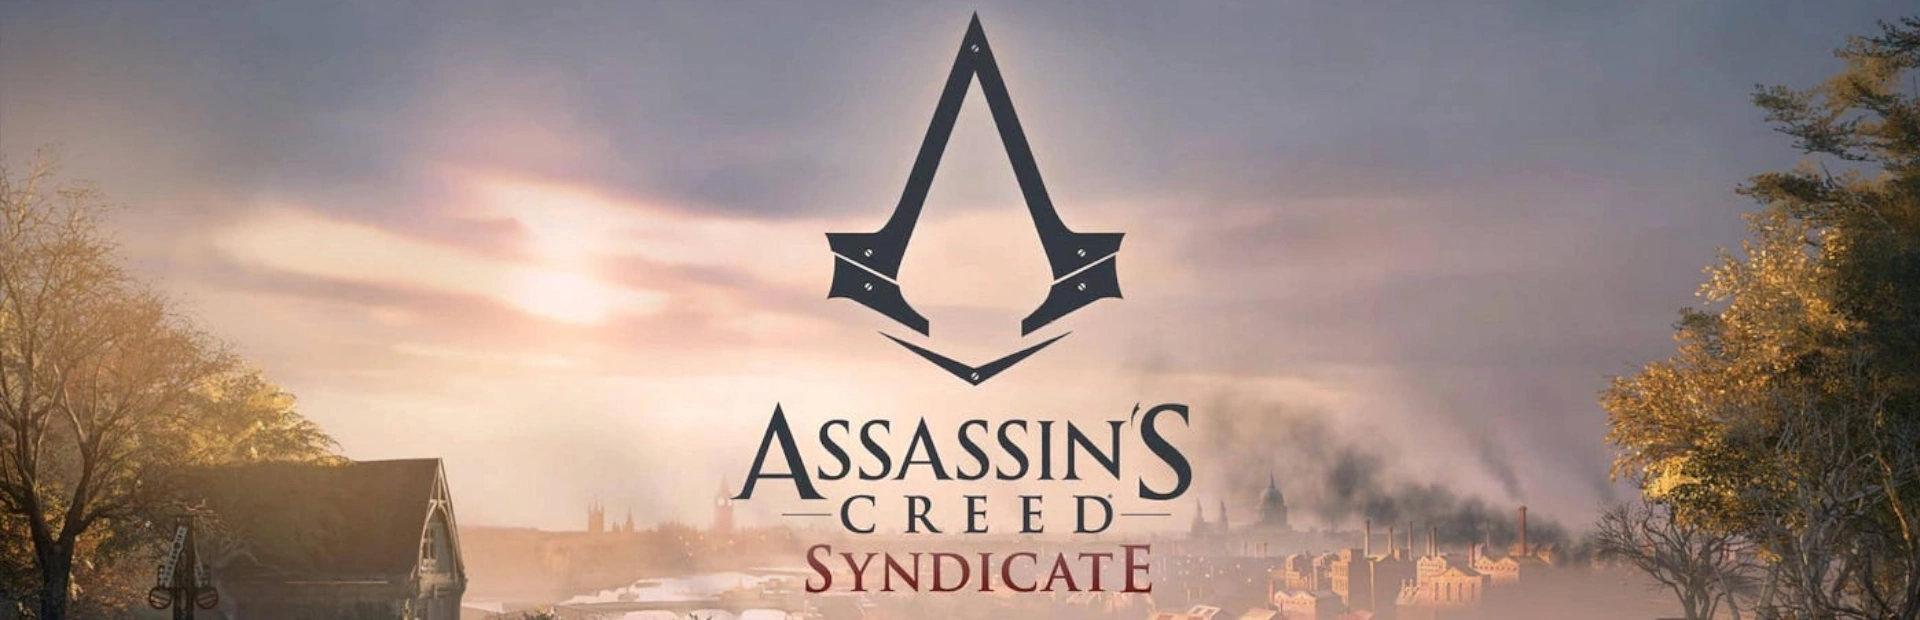 دانلود بازی Assassin's Creed Syndicate برای کامپیوتر|گیمباتو